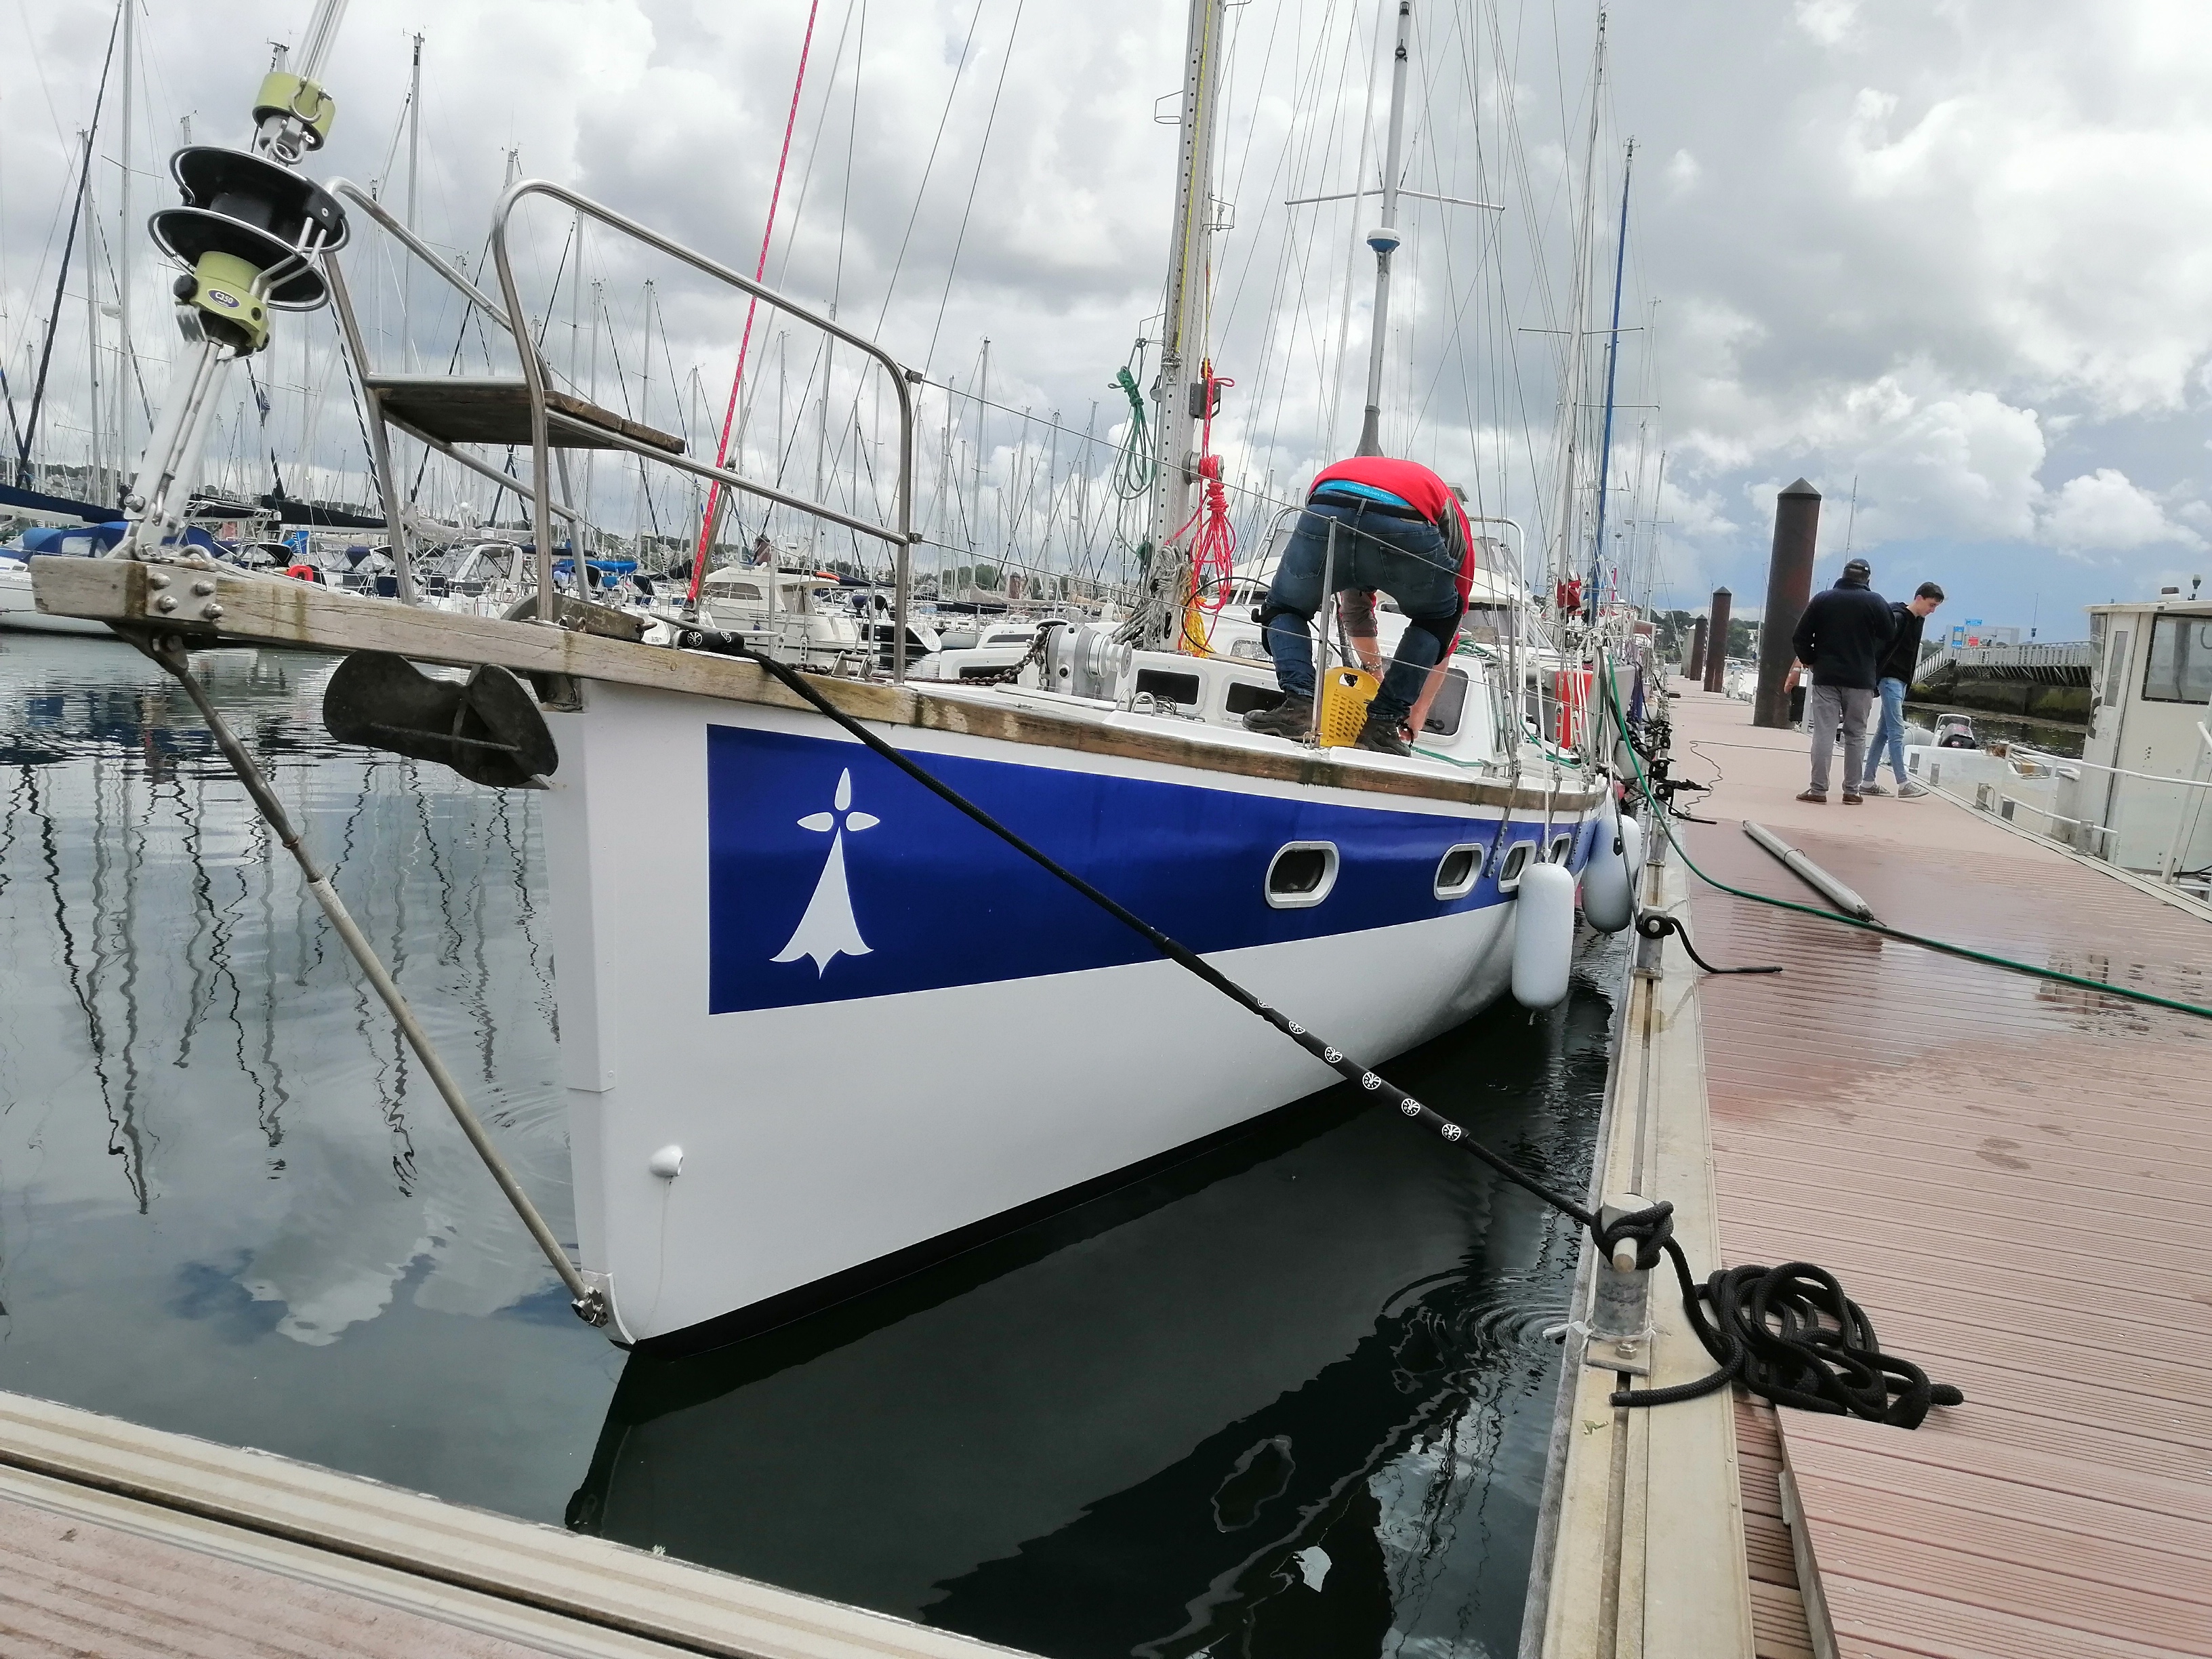 Rénovation du voilier Sterenn Du, Brest